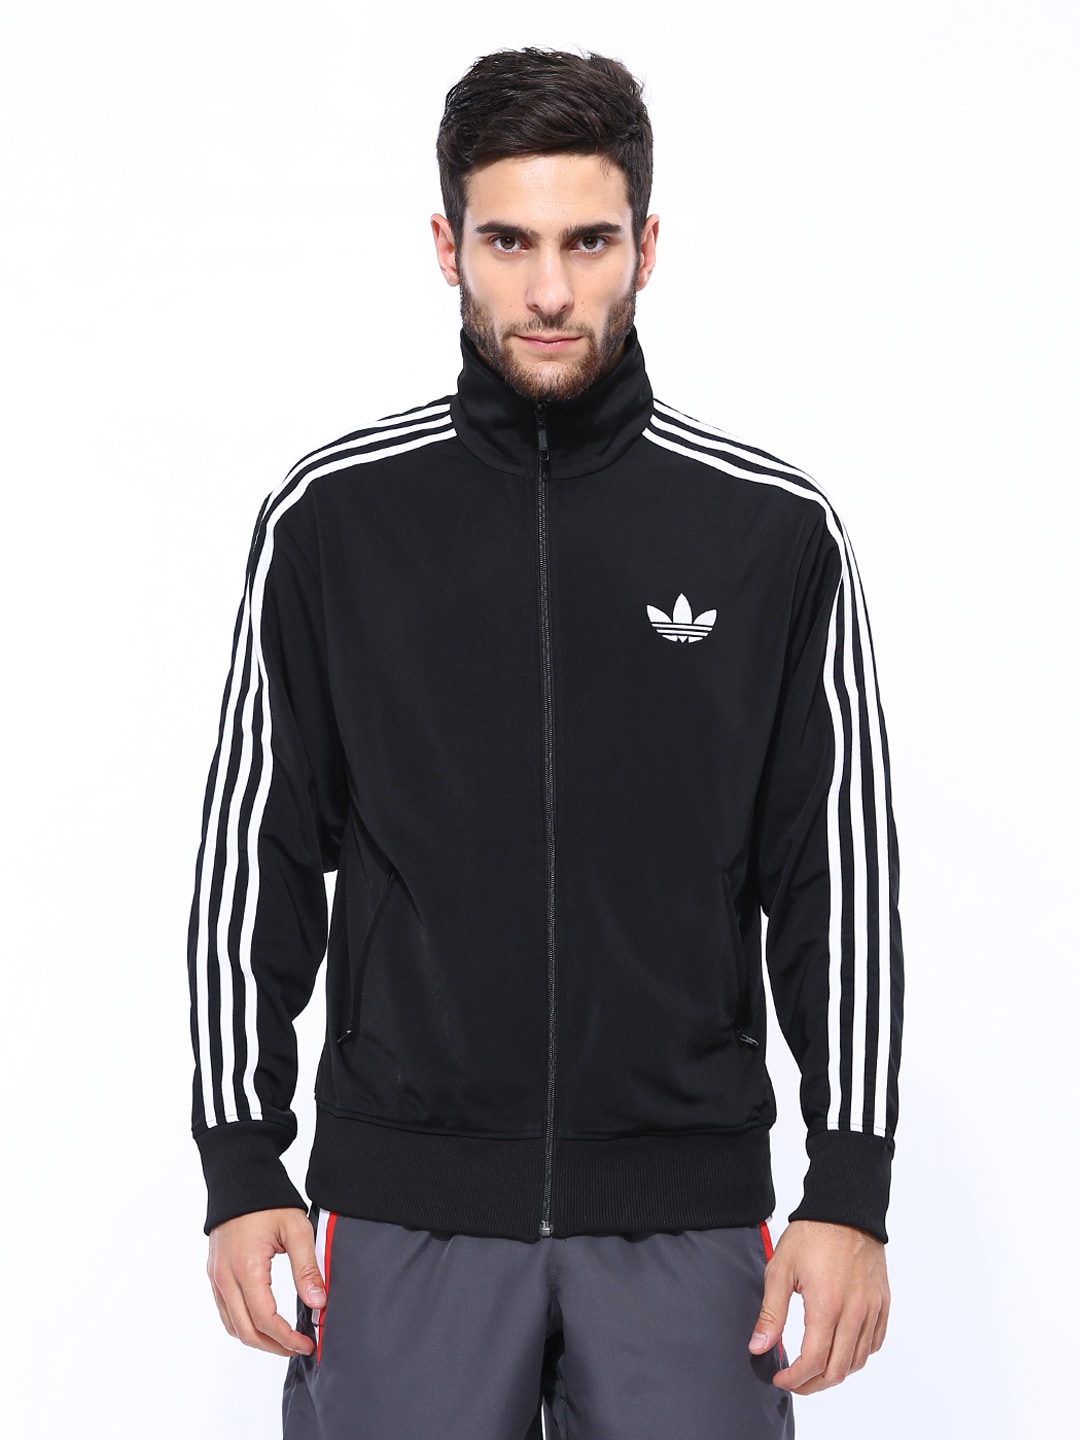 Buy Adidas Originals Men Black ADI FIREBIRD TT Jacket - 292 - Apparel